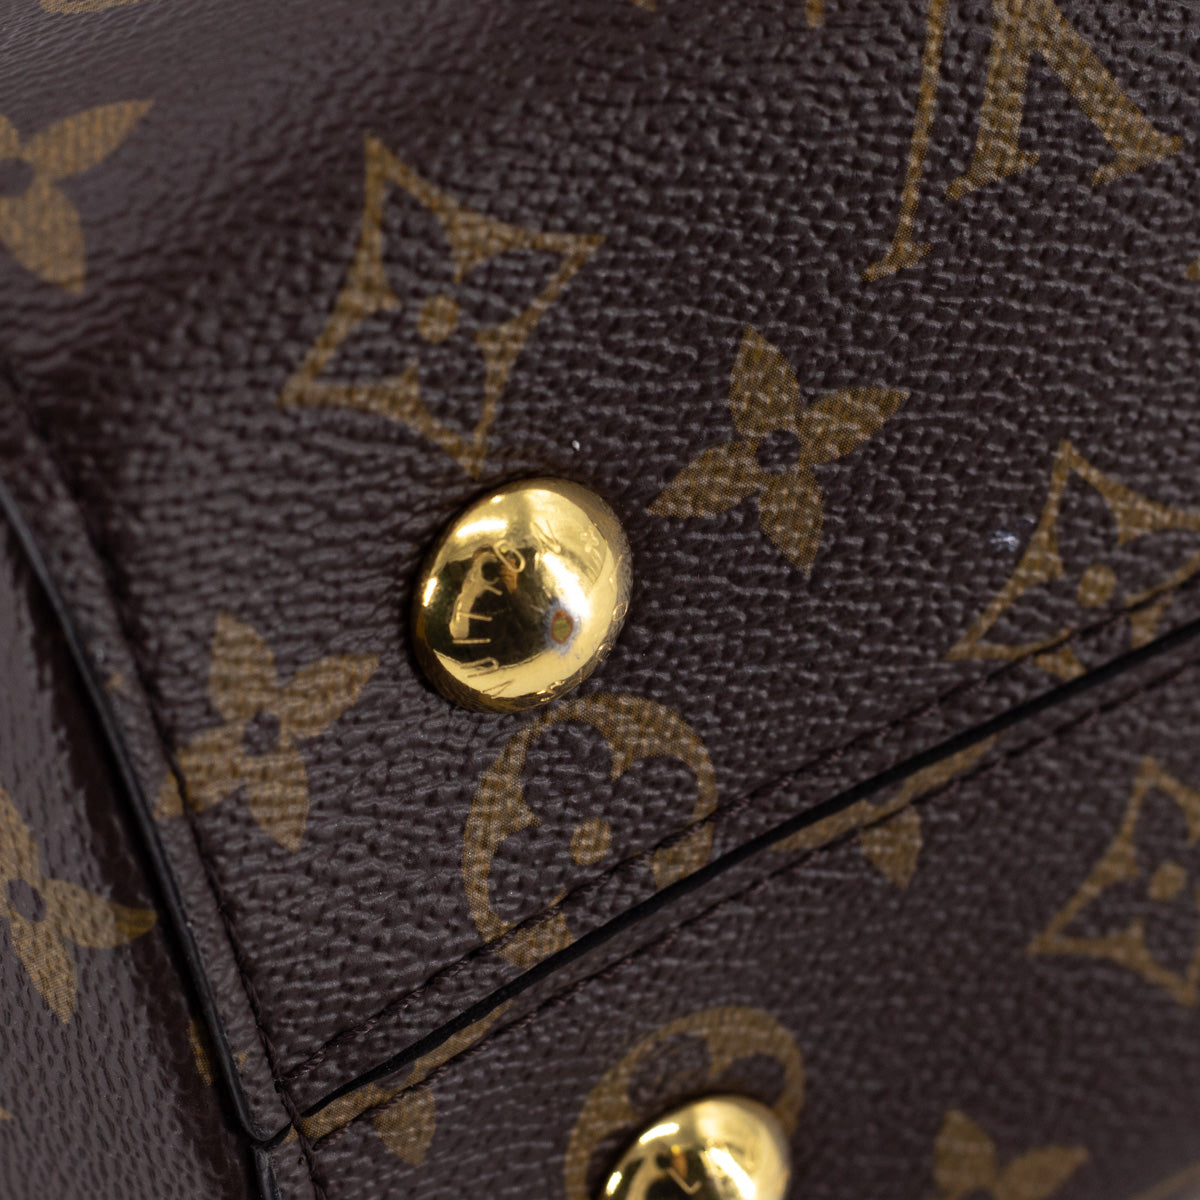 Louis Vuitton Cluny MM Monogram Handbag ○ Labellov ○ Buy and